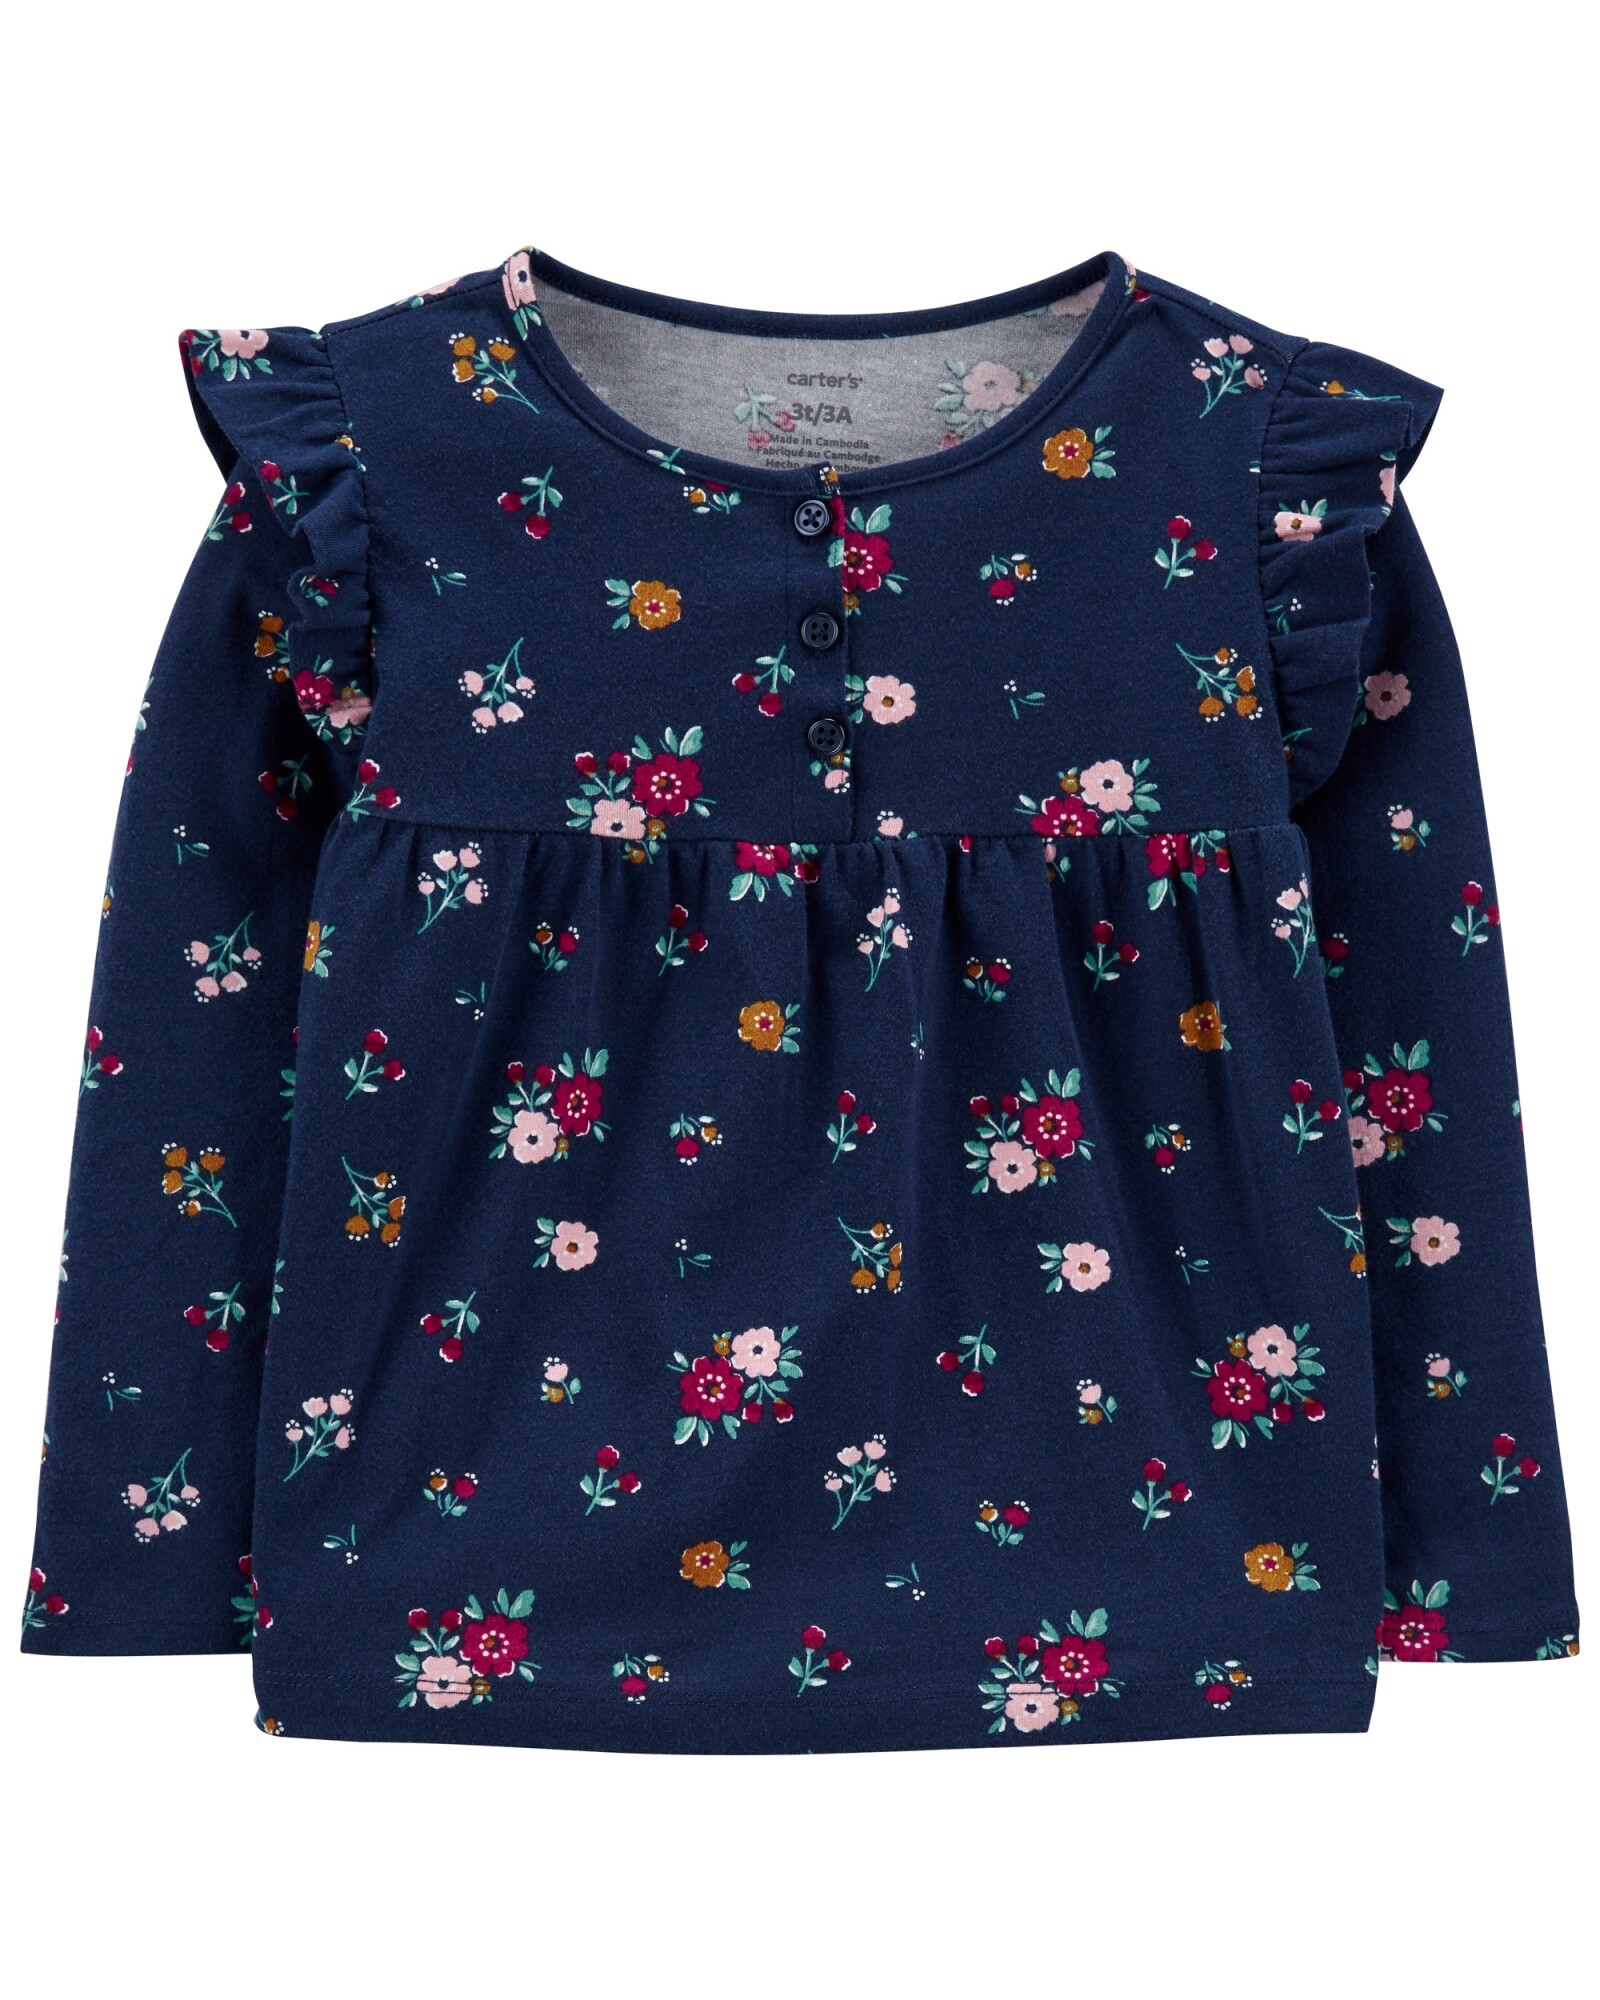 Blusa de algodón manga larga con volados, botones y diseño flores Sin color